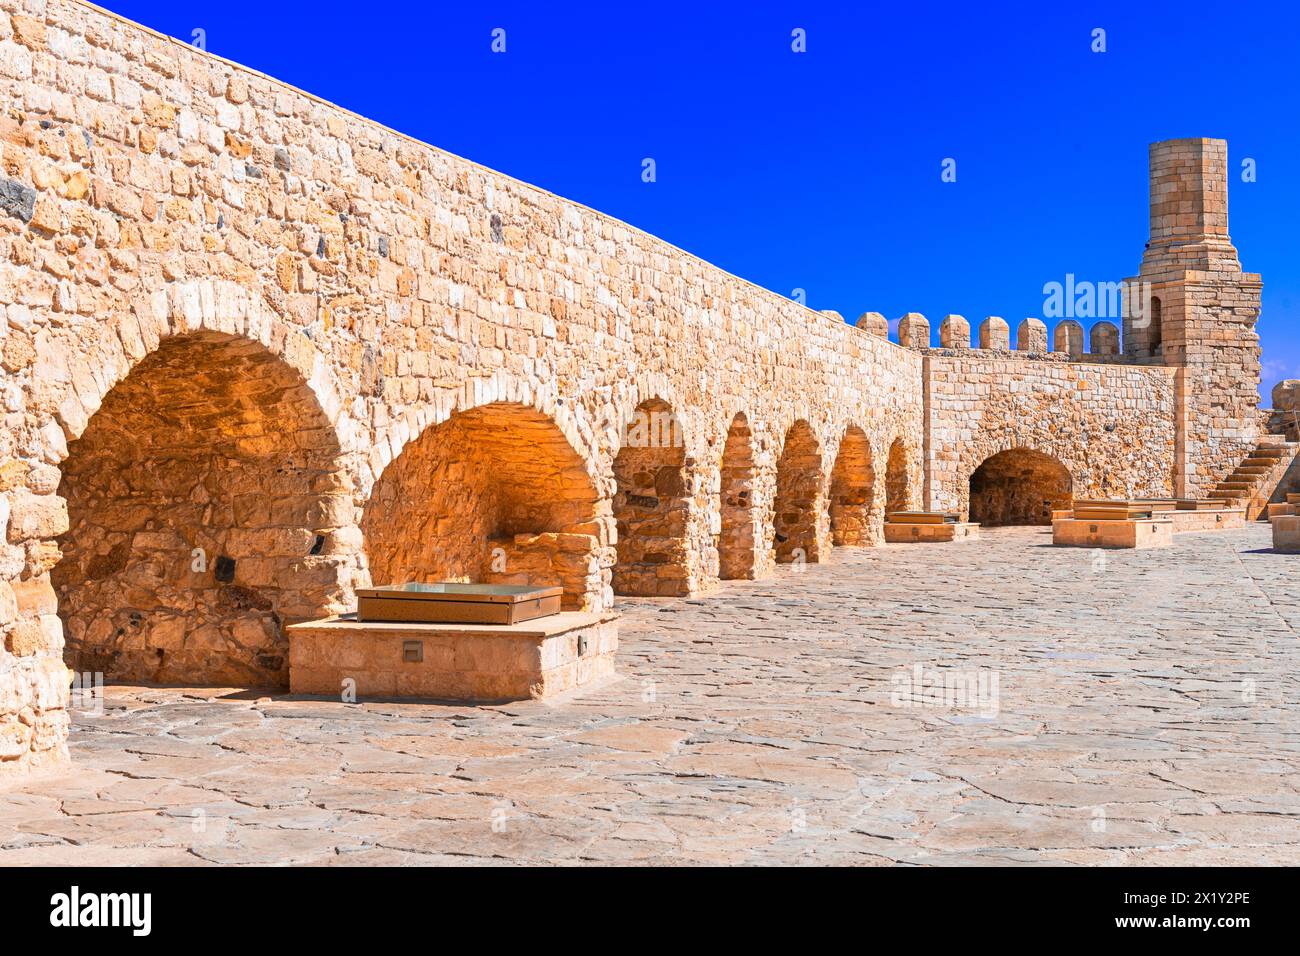 Koules, Heraklion, Creta, Grecia: Mura fortificate dei Koules o Castello a Mare, una fortezza nel vecchio porto di Heraklion Foto Stock